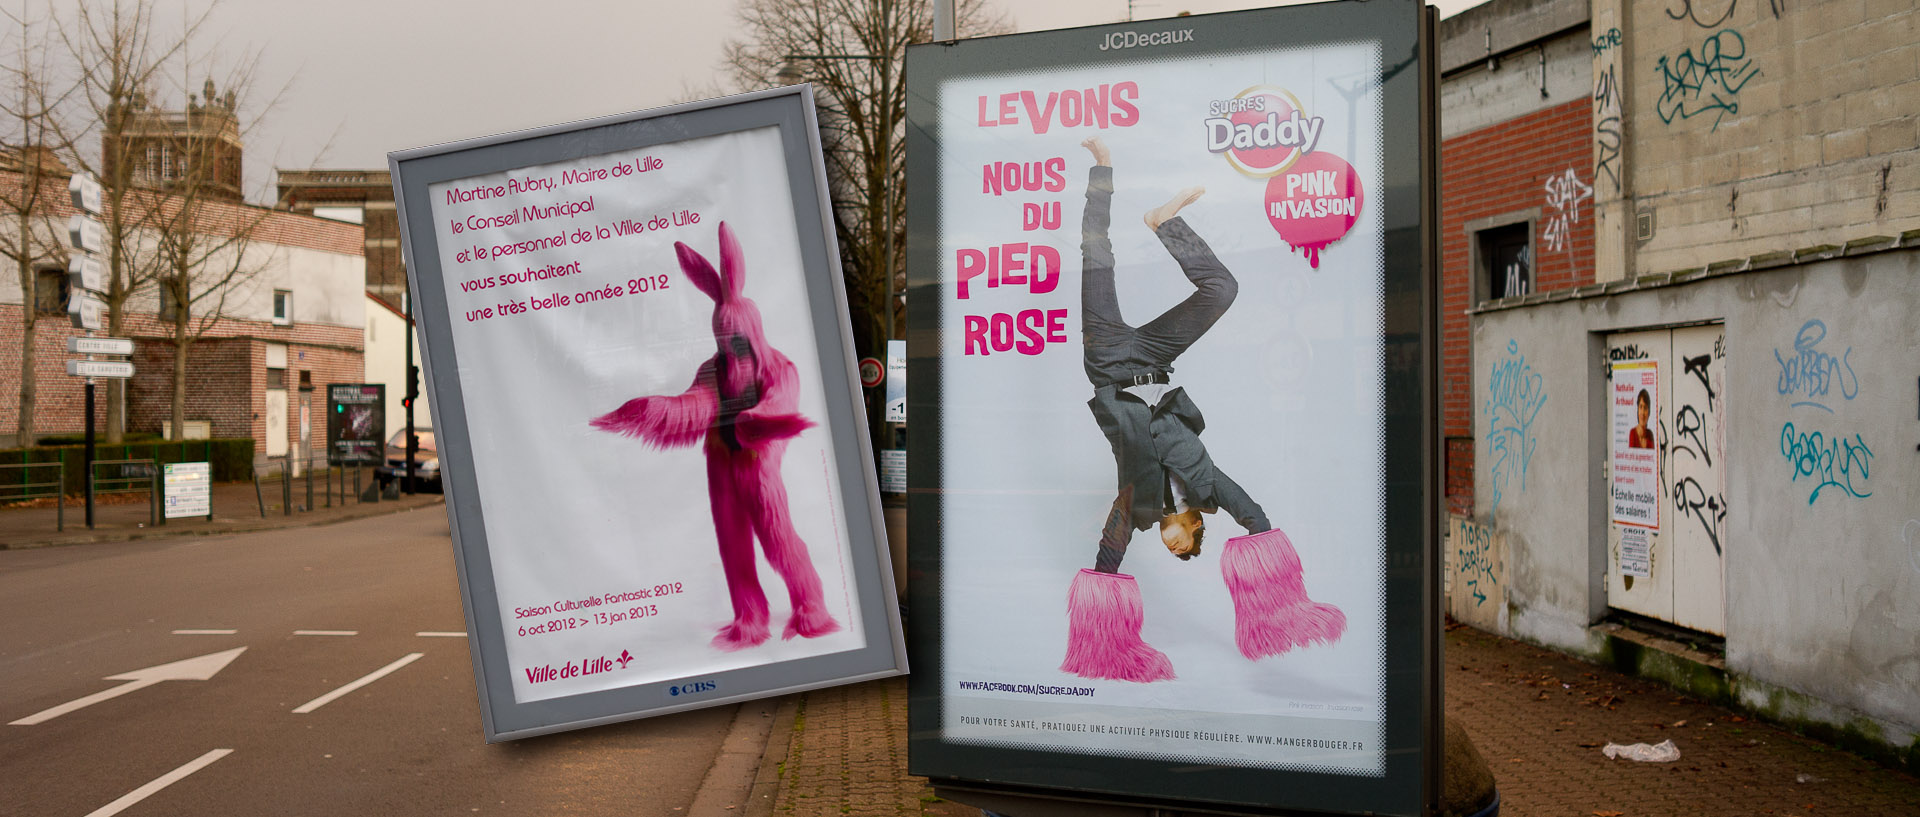 Photomontage entre une publicité pour les voeux du maire de Lille et une publicité pour le sucre Daddy, à Croix.